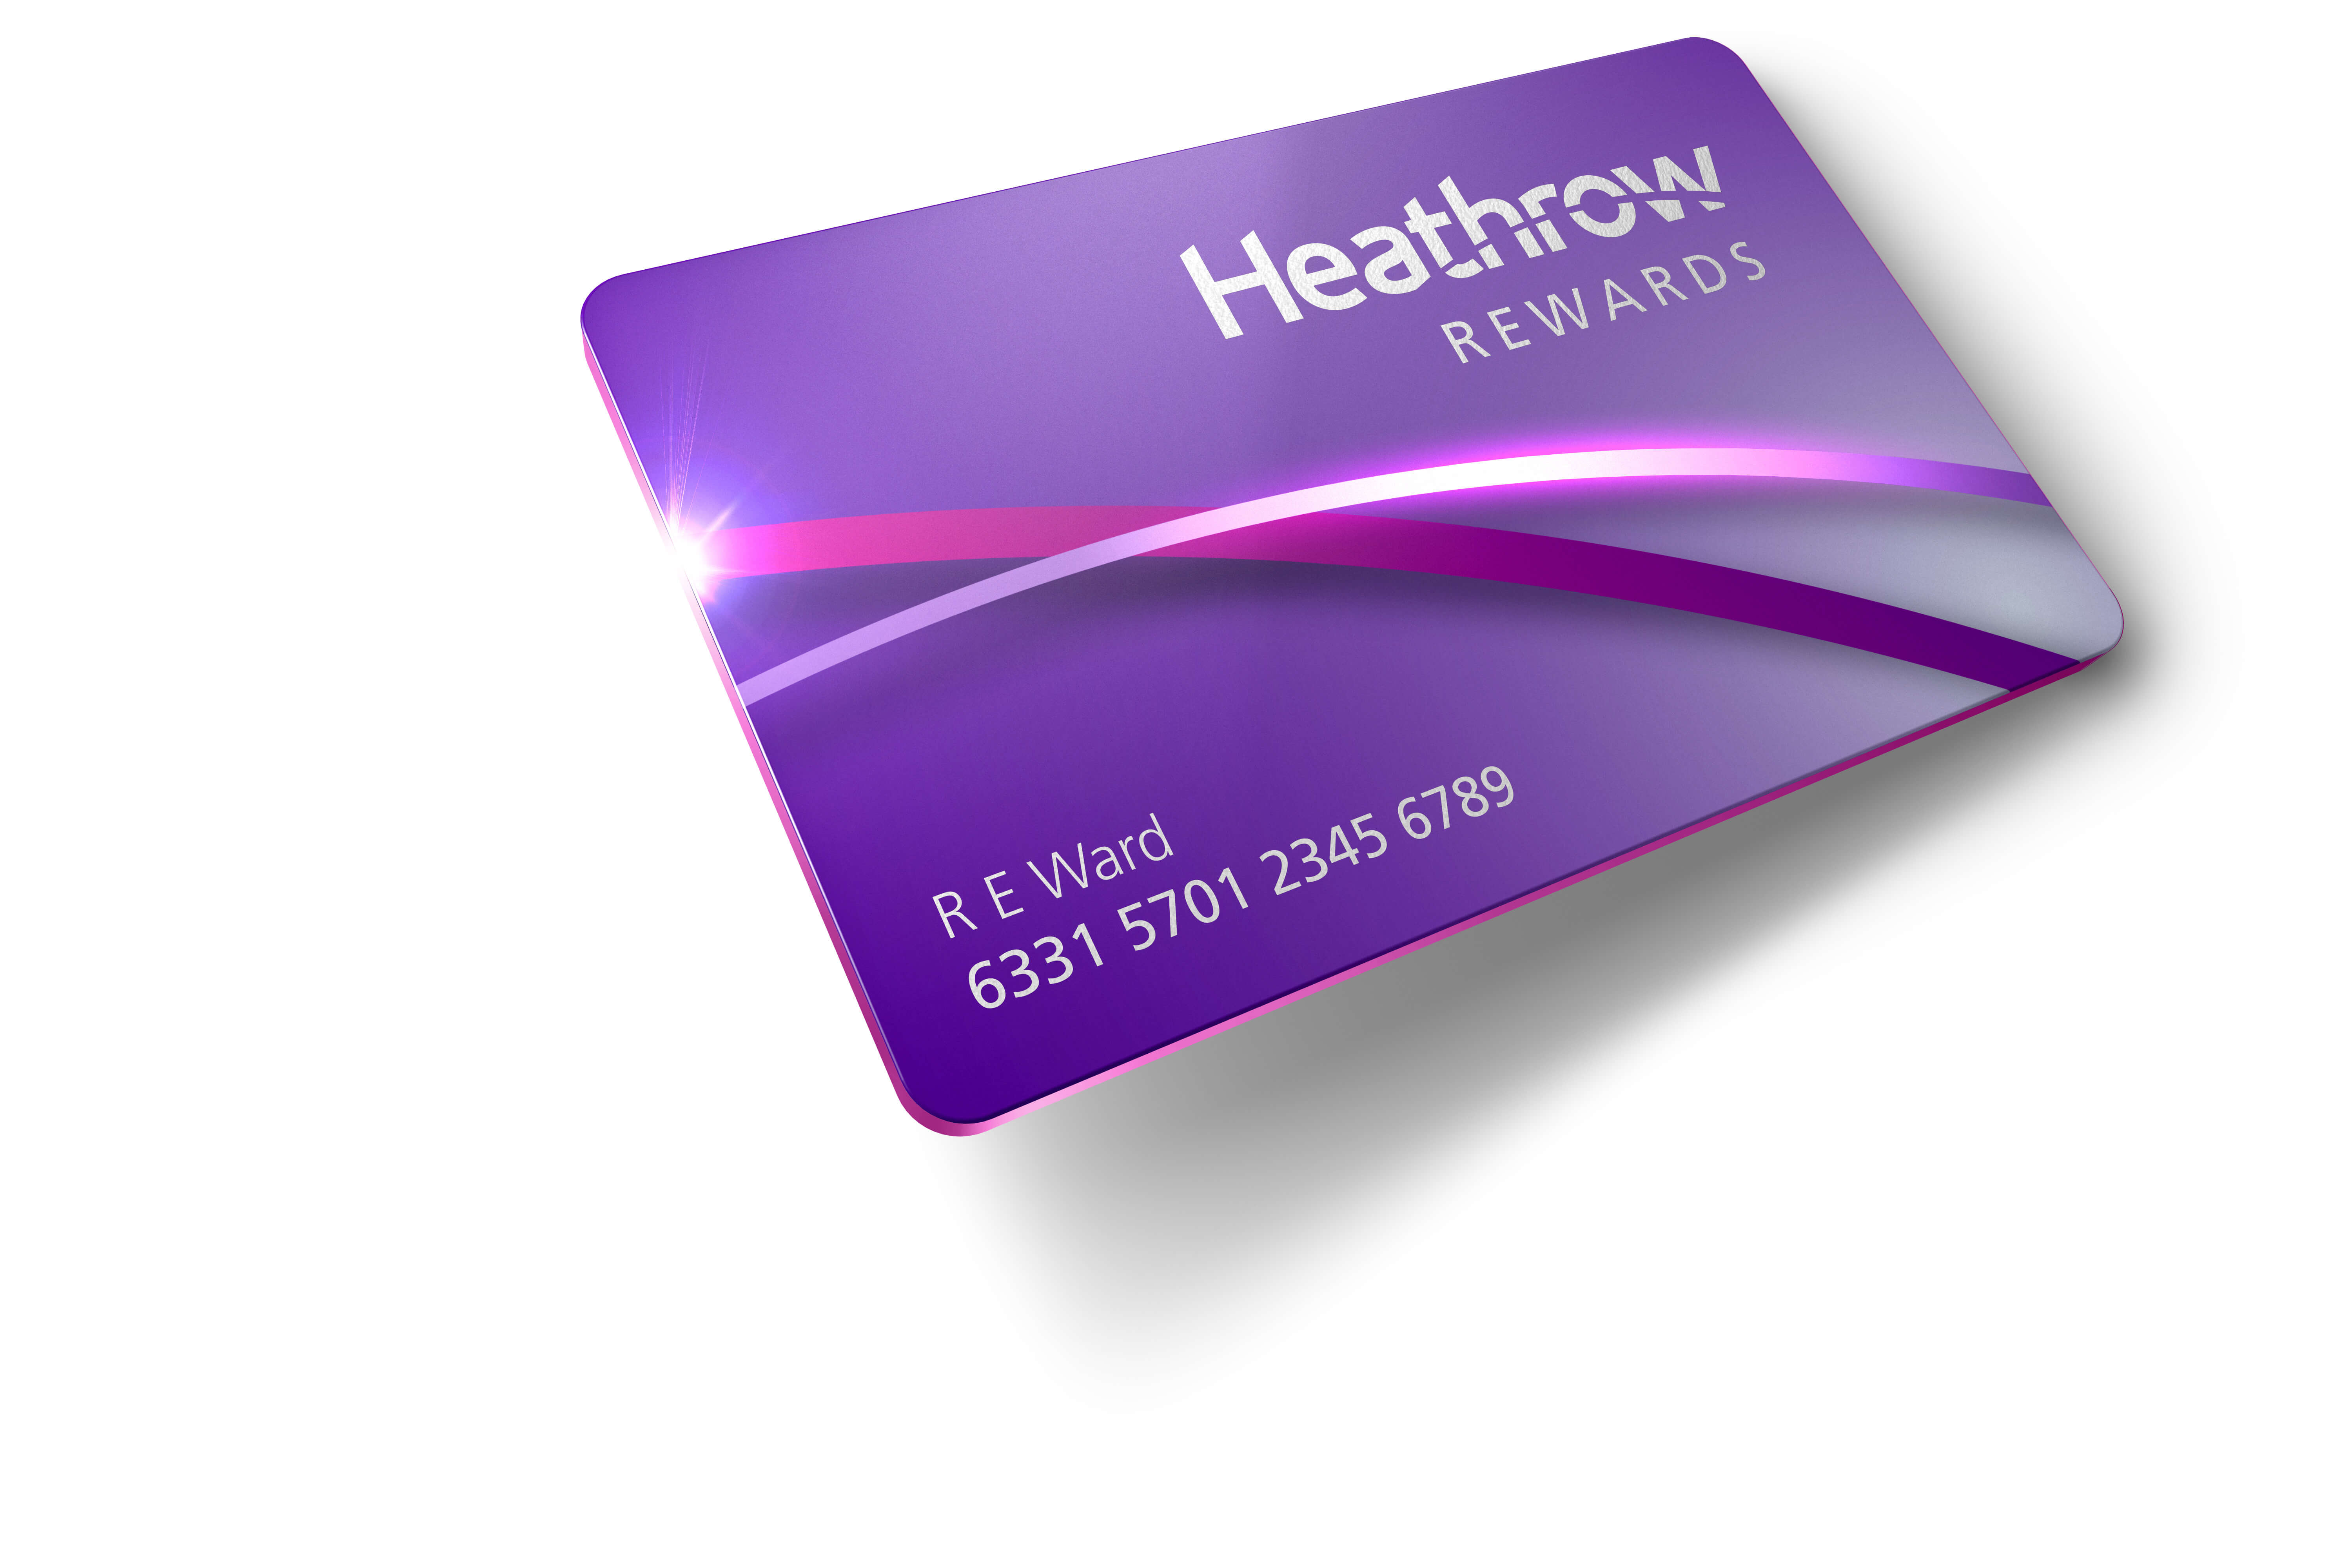 Heathrow Rewards card